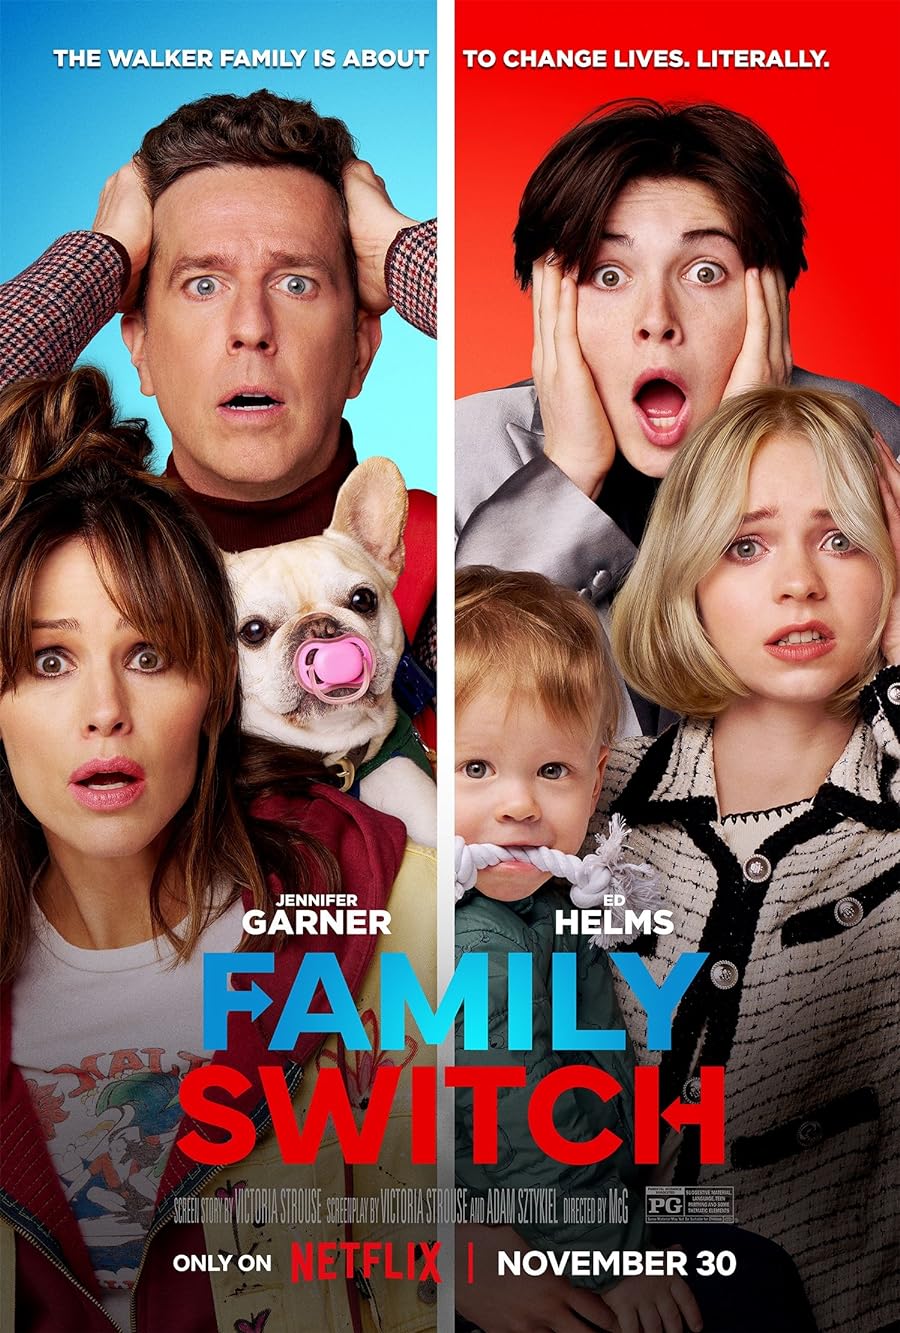 دانلود فیلم جابجایی خانواده Family Switch 2023